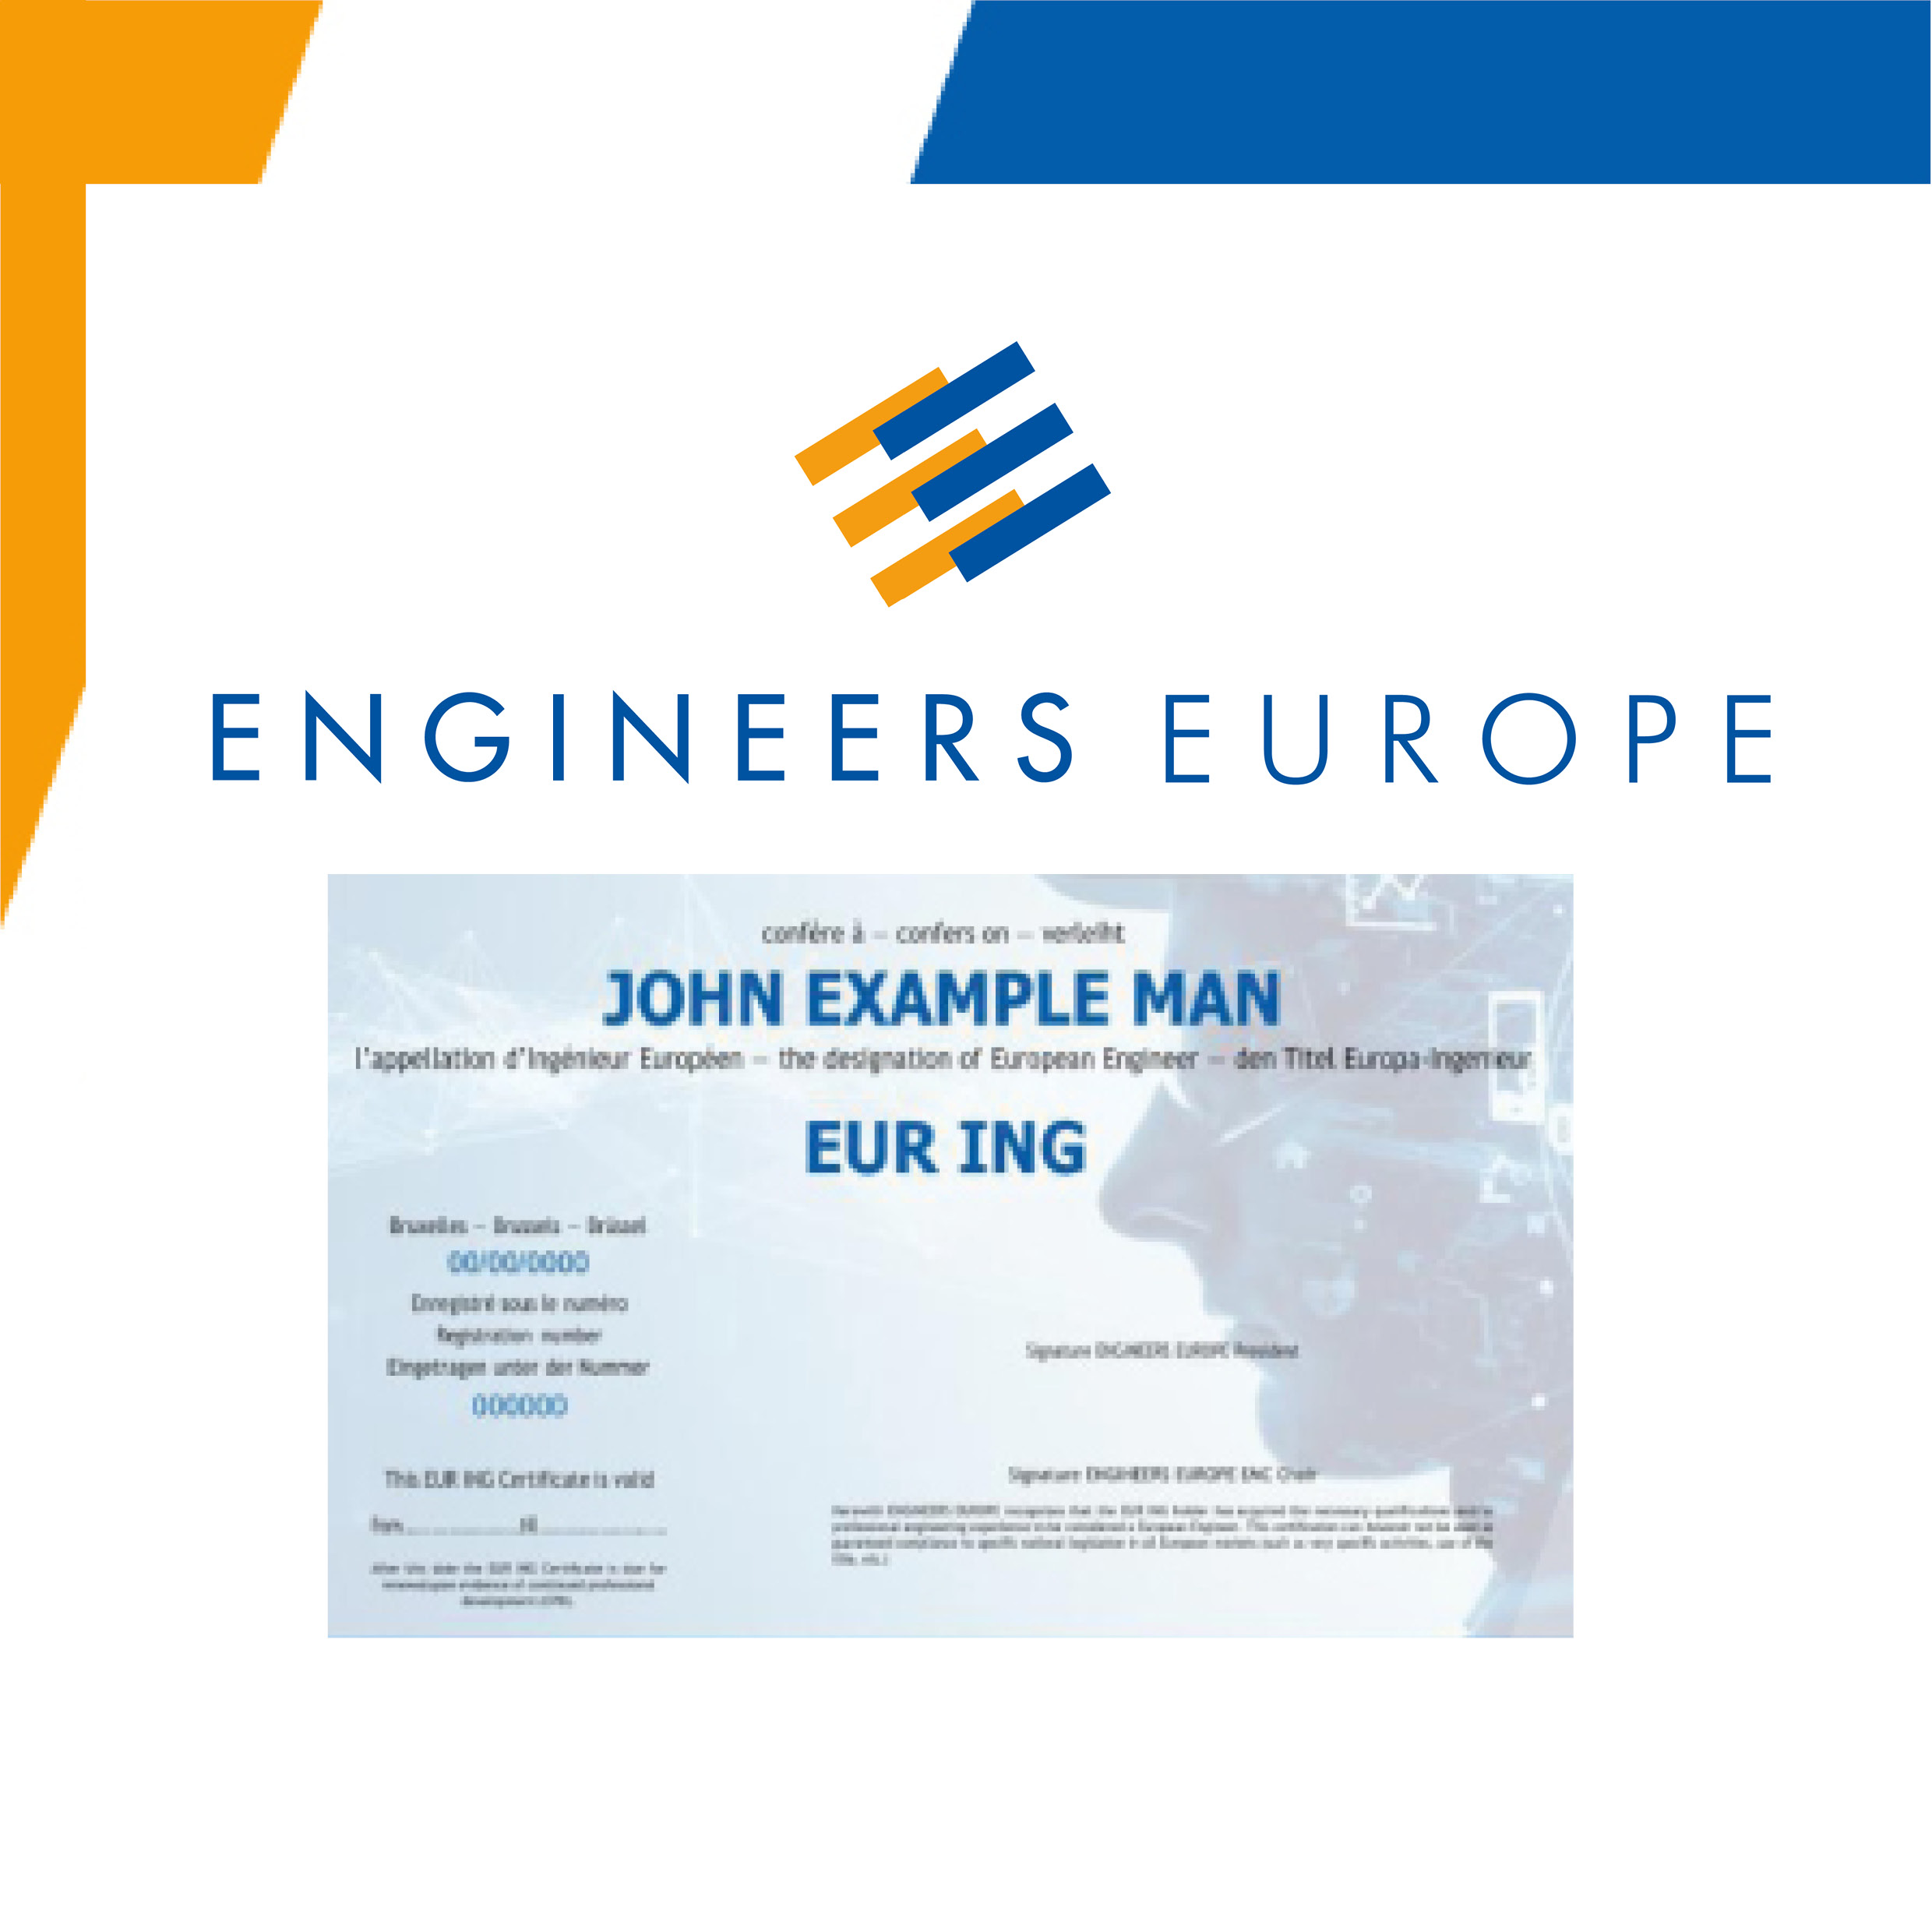 EUR ING – Werden Sie Europa-Ingenieur:in!